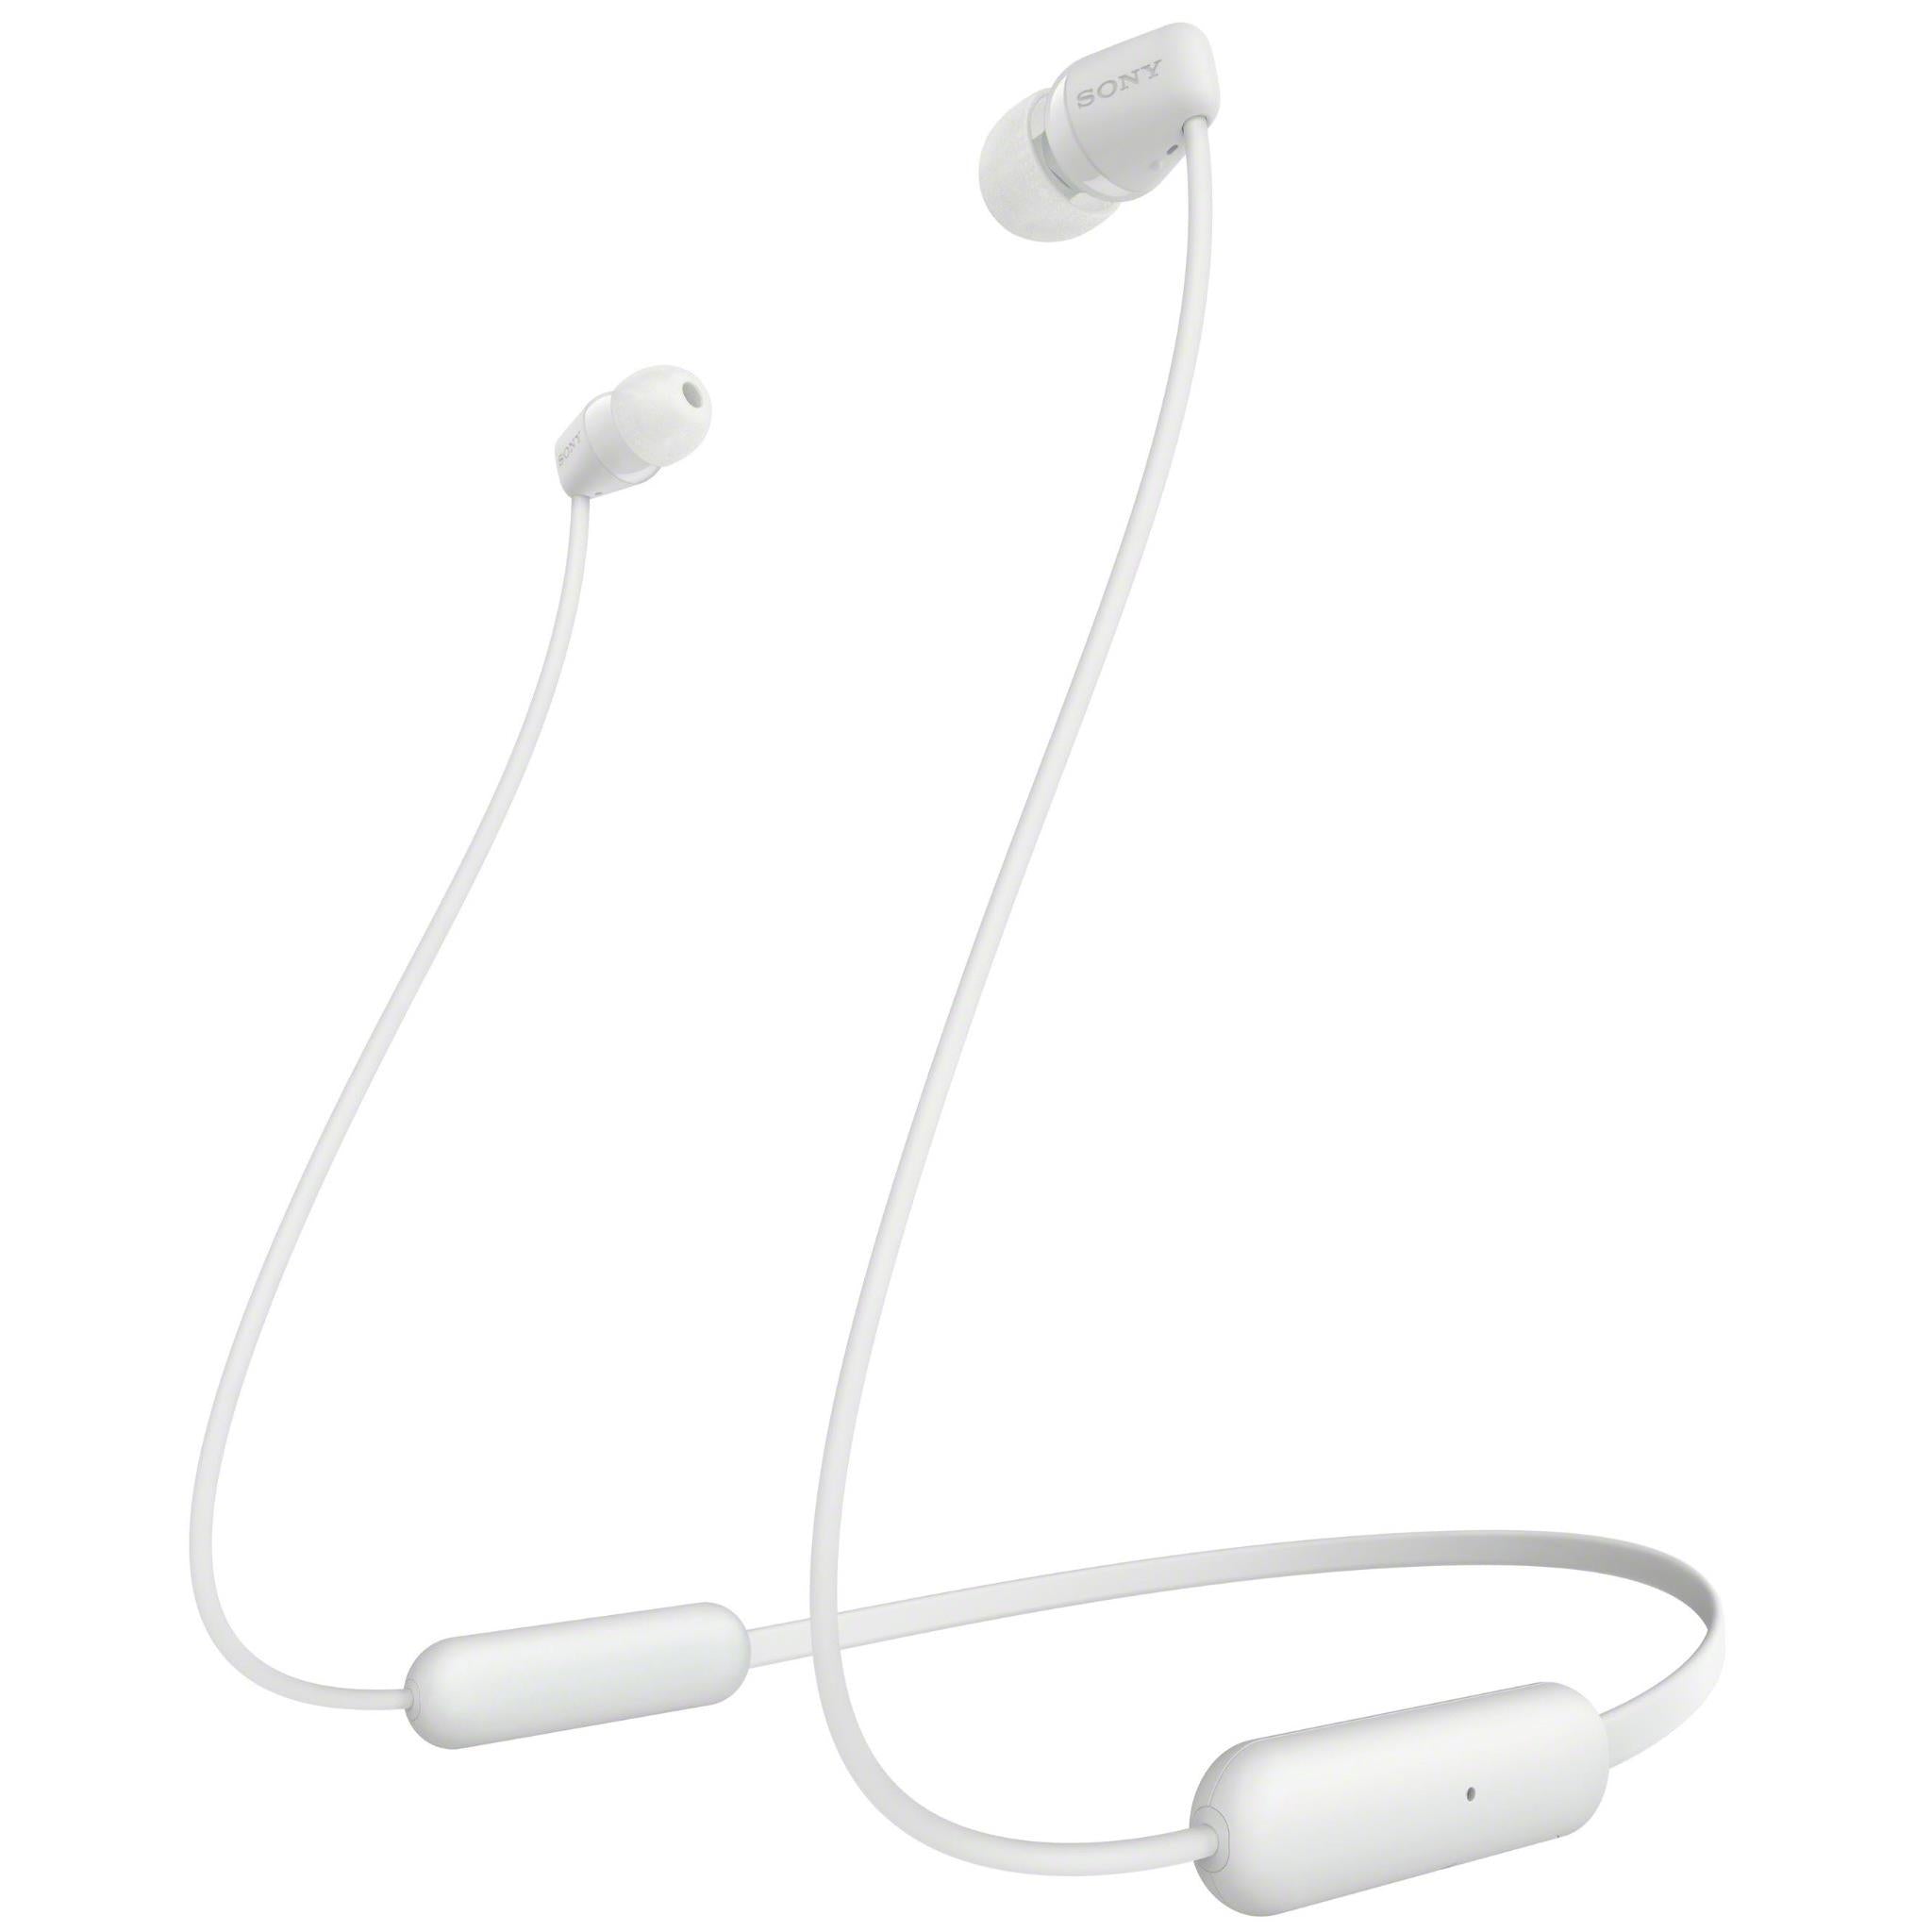 sony wi-c200 wireless in-ear headphones (white)